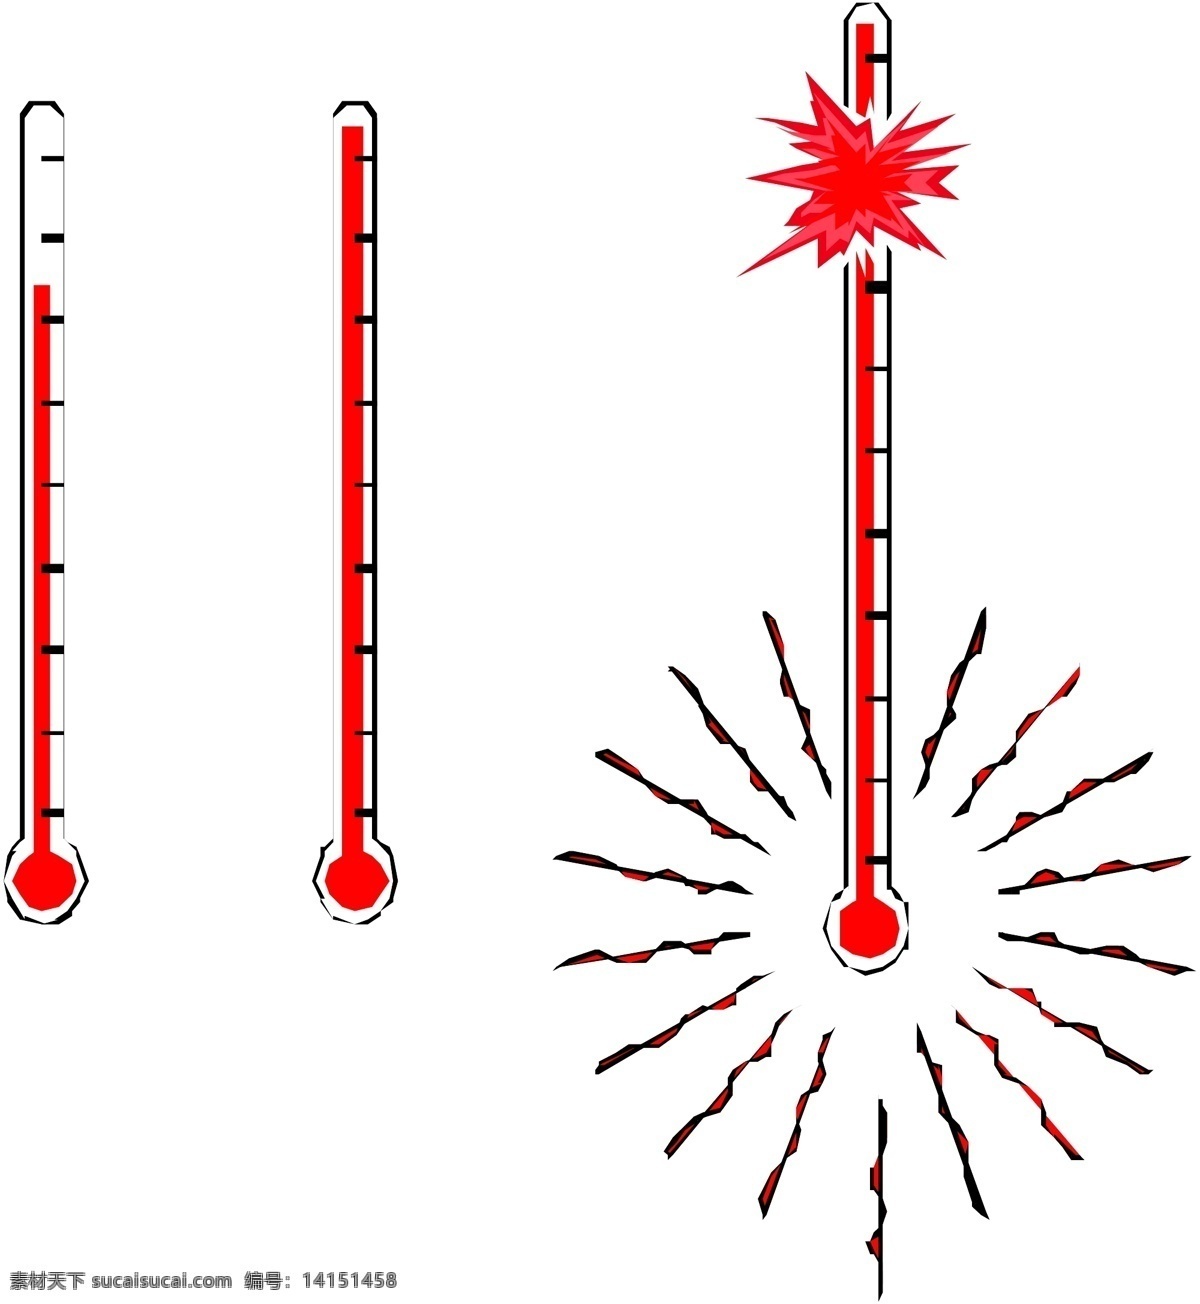 体温计 测量体温 体温检查 体温检测 监测 水位 水银温度计 标志图标 其他图标